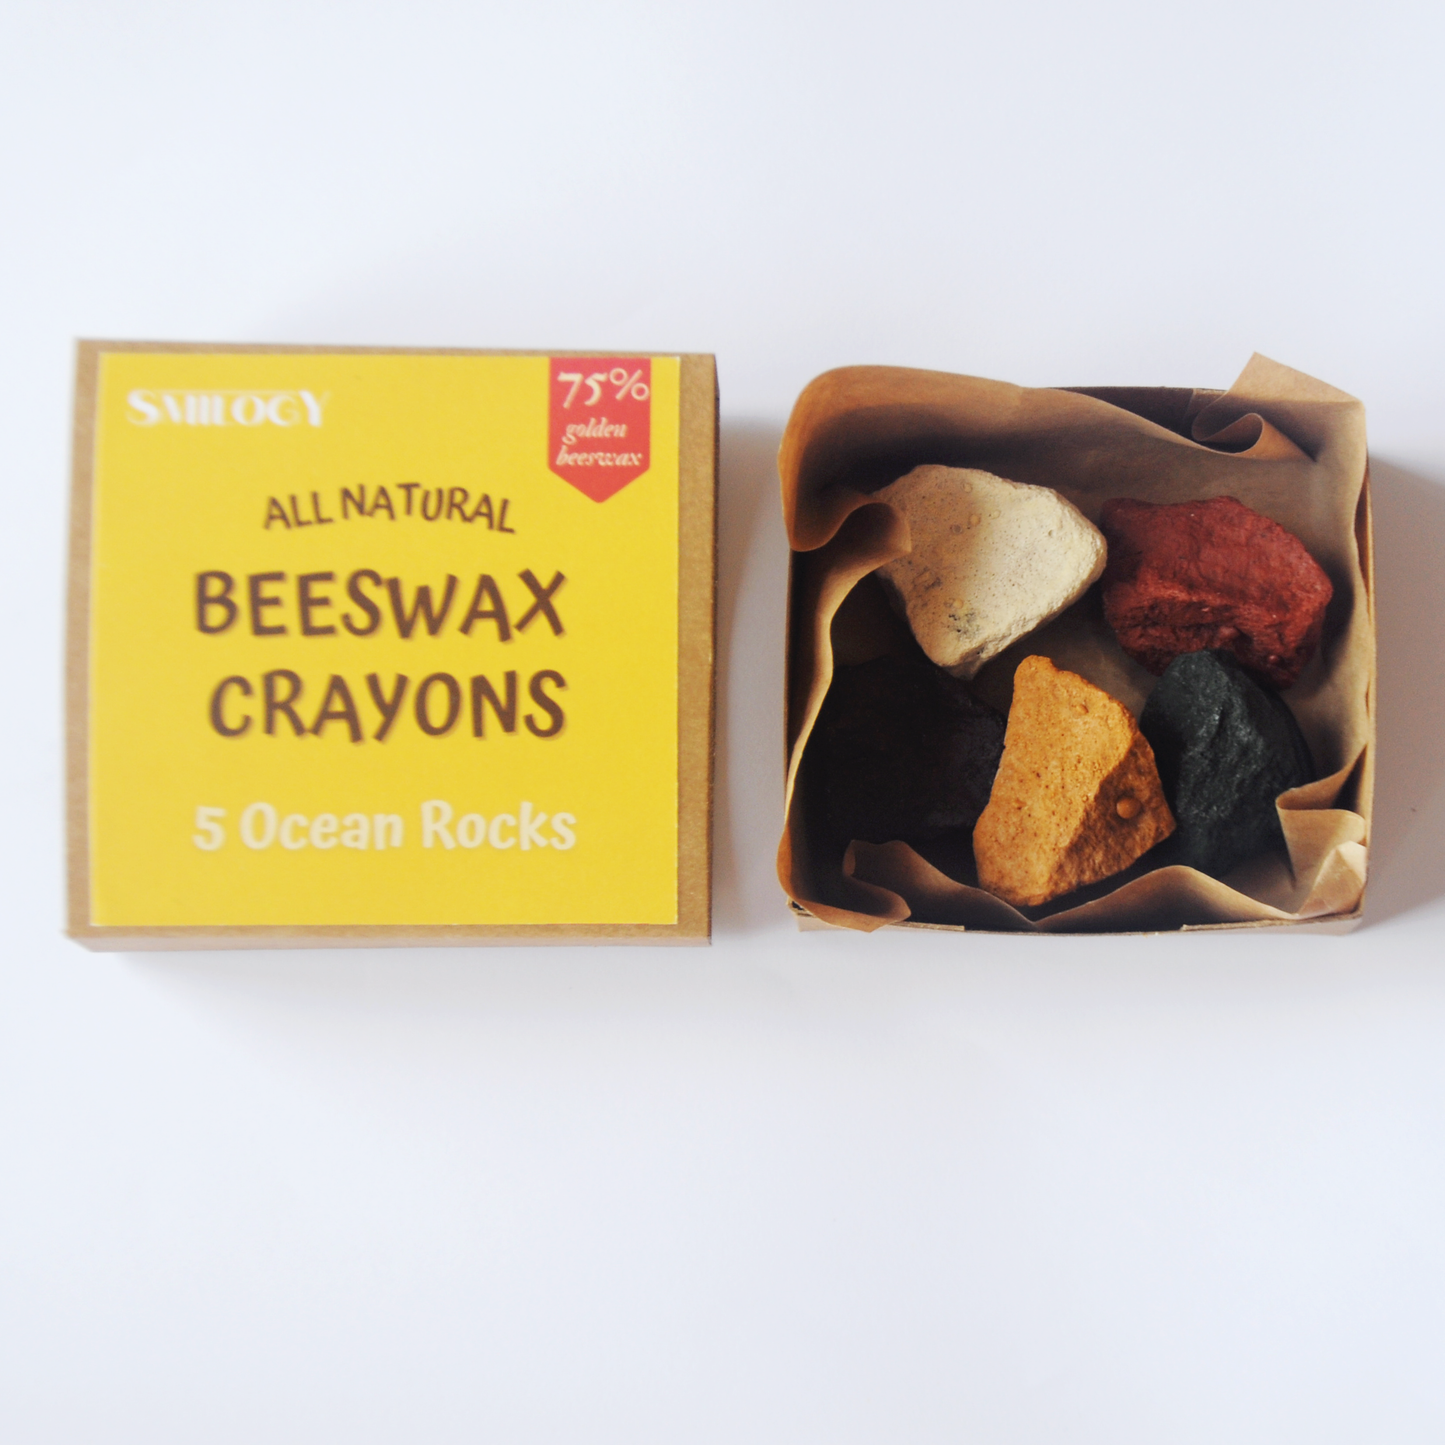 Beeswax Crayons – Woodford Cedar Run Wildlife Refuge